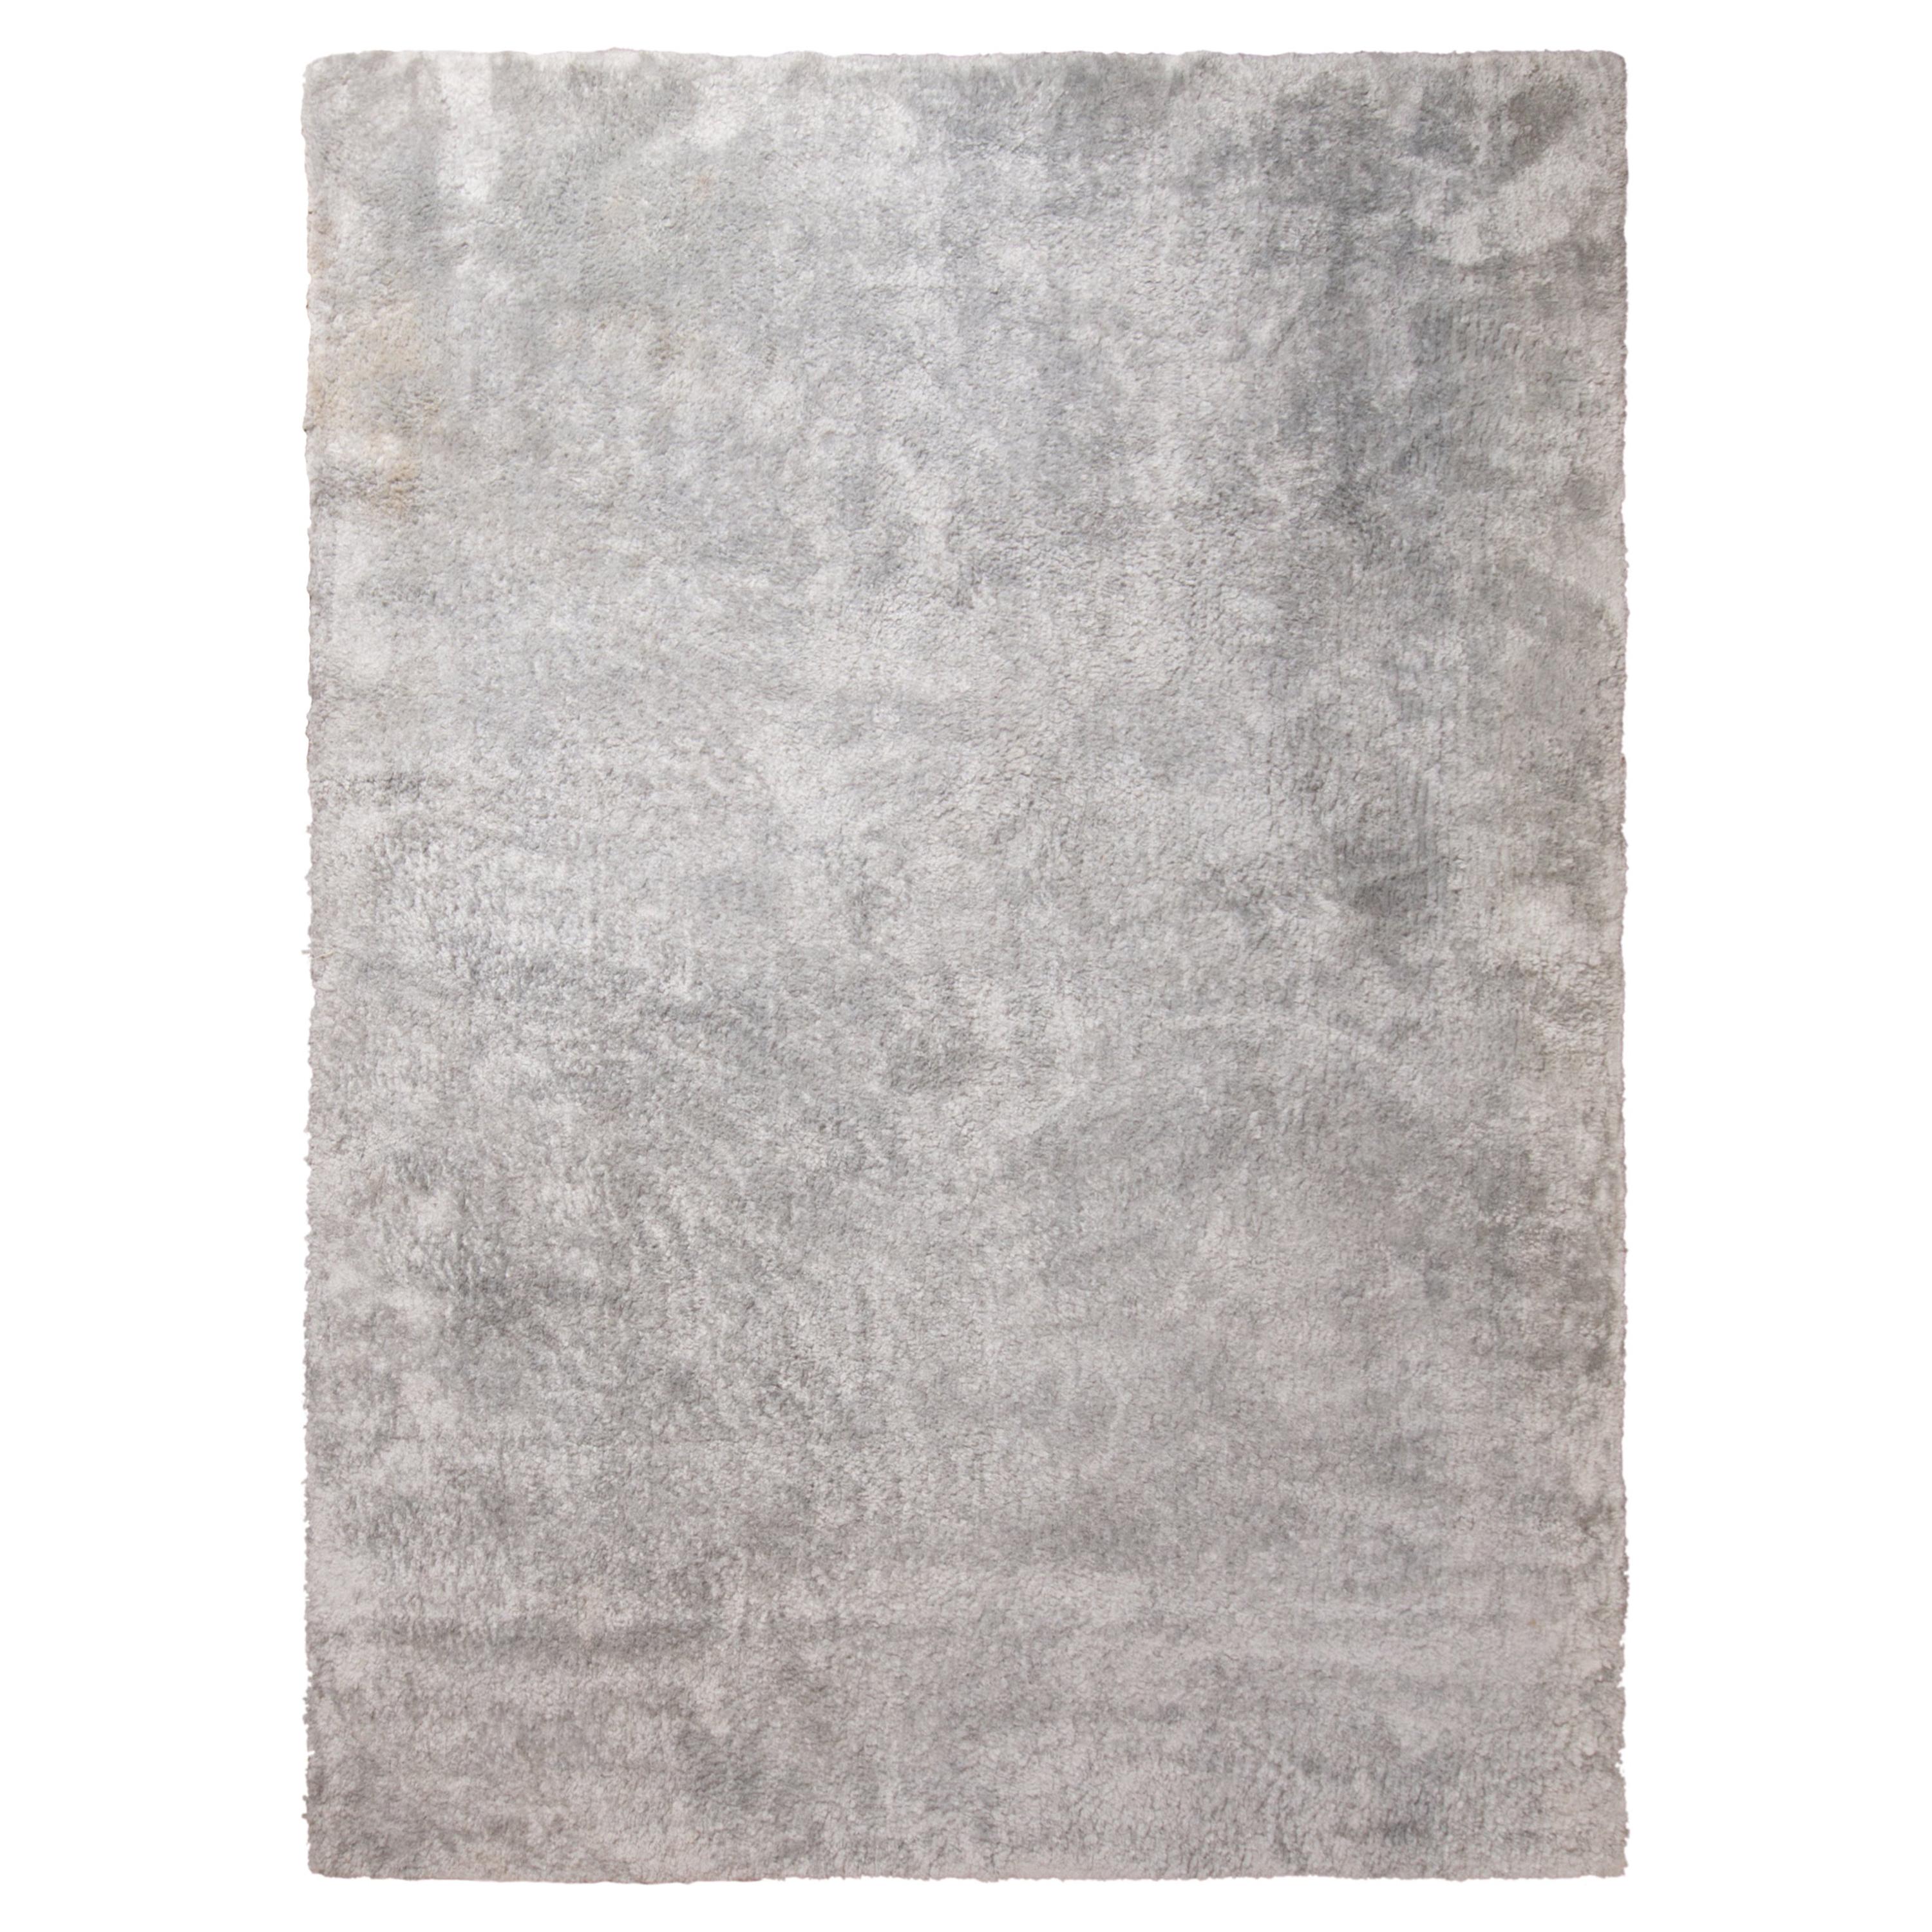 Texturierter, schlichter Teppich von Teppich & Kilims in Grau/Silber in zwei Farbtönen, hoher Flor im Angebot